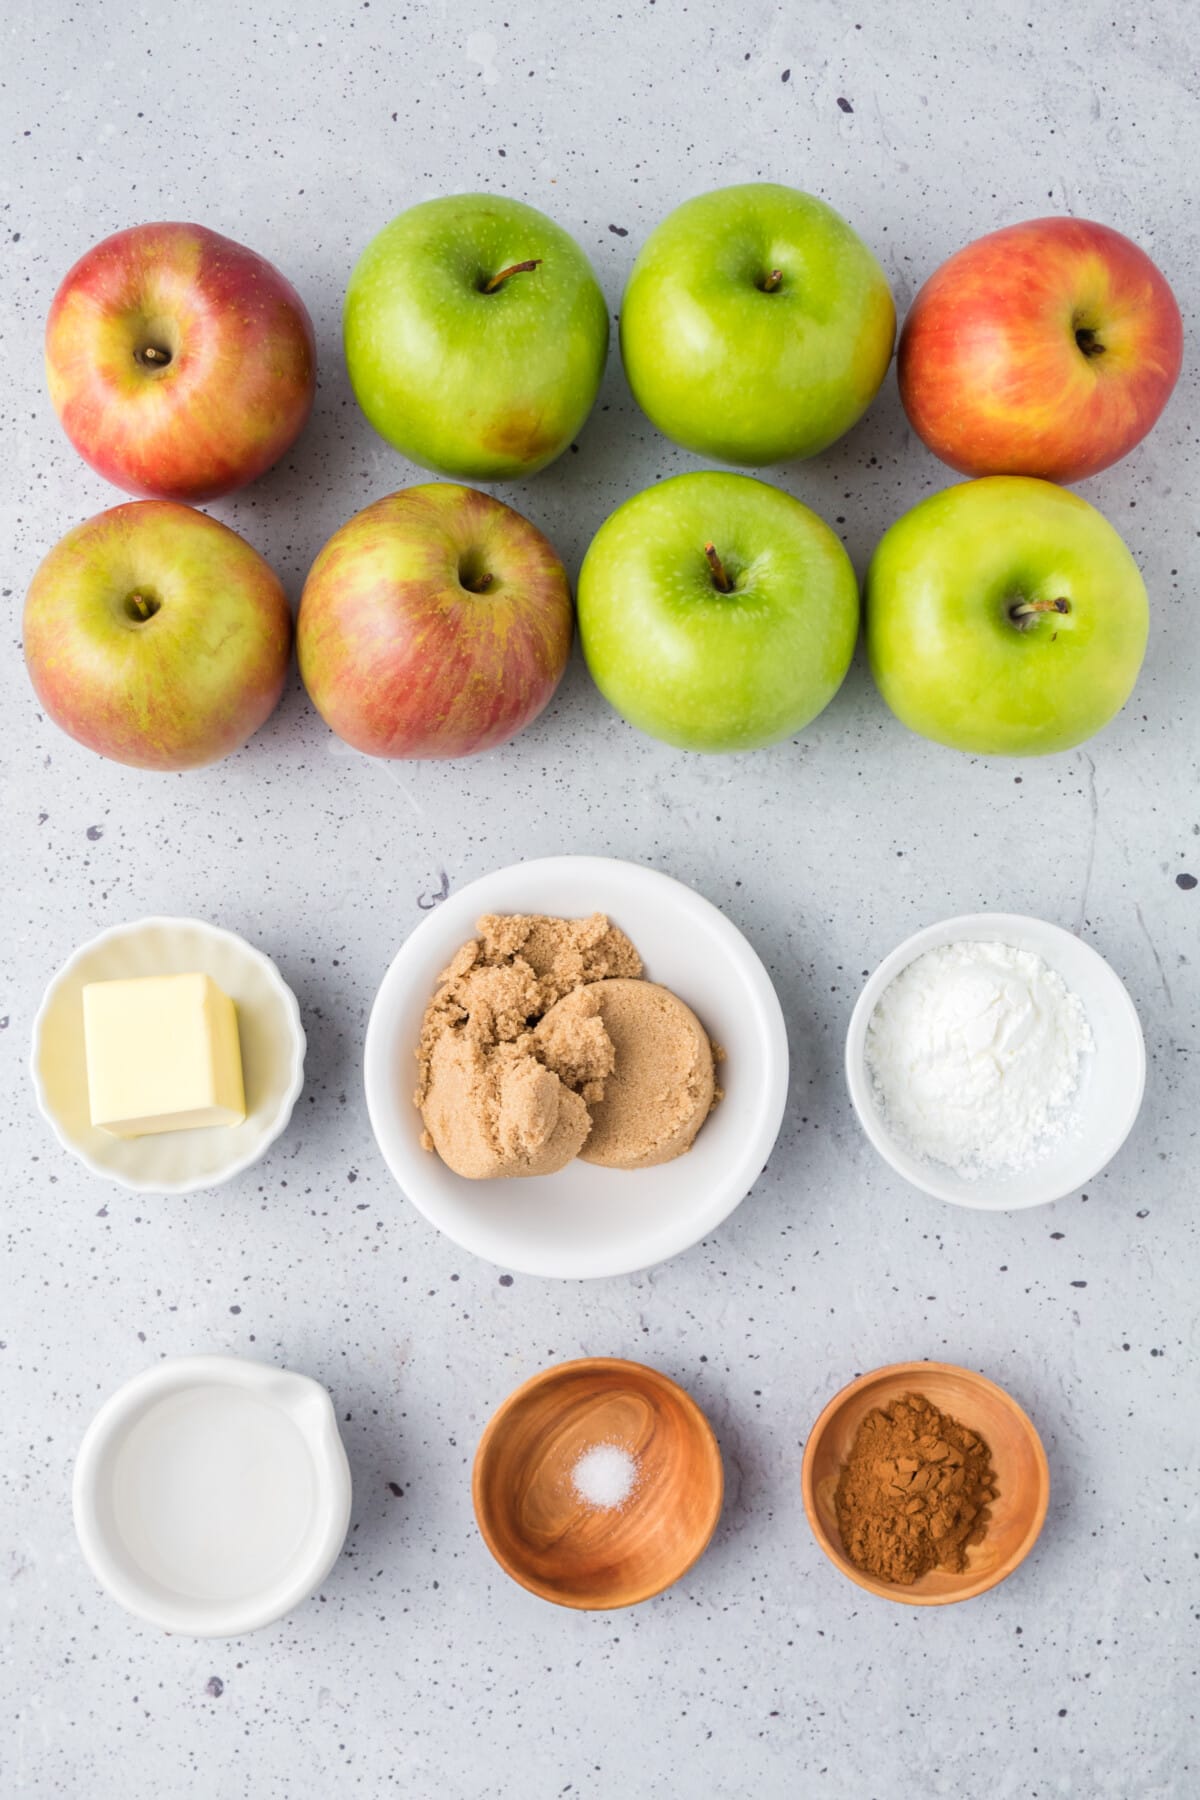 Apple Pie Filling Ingredients